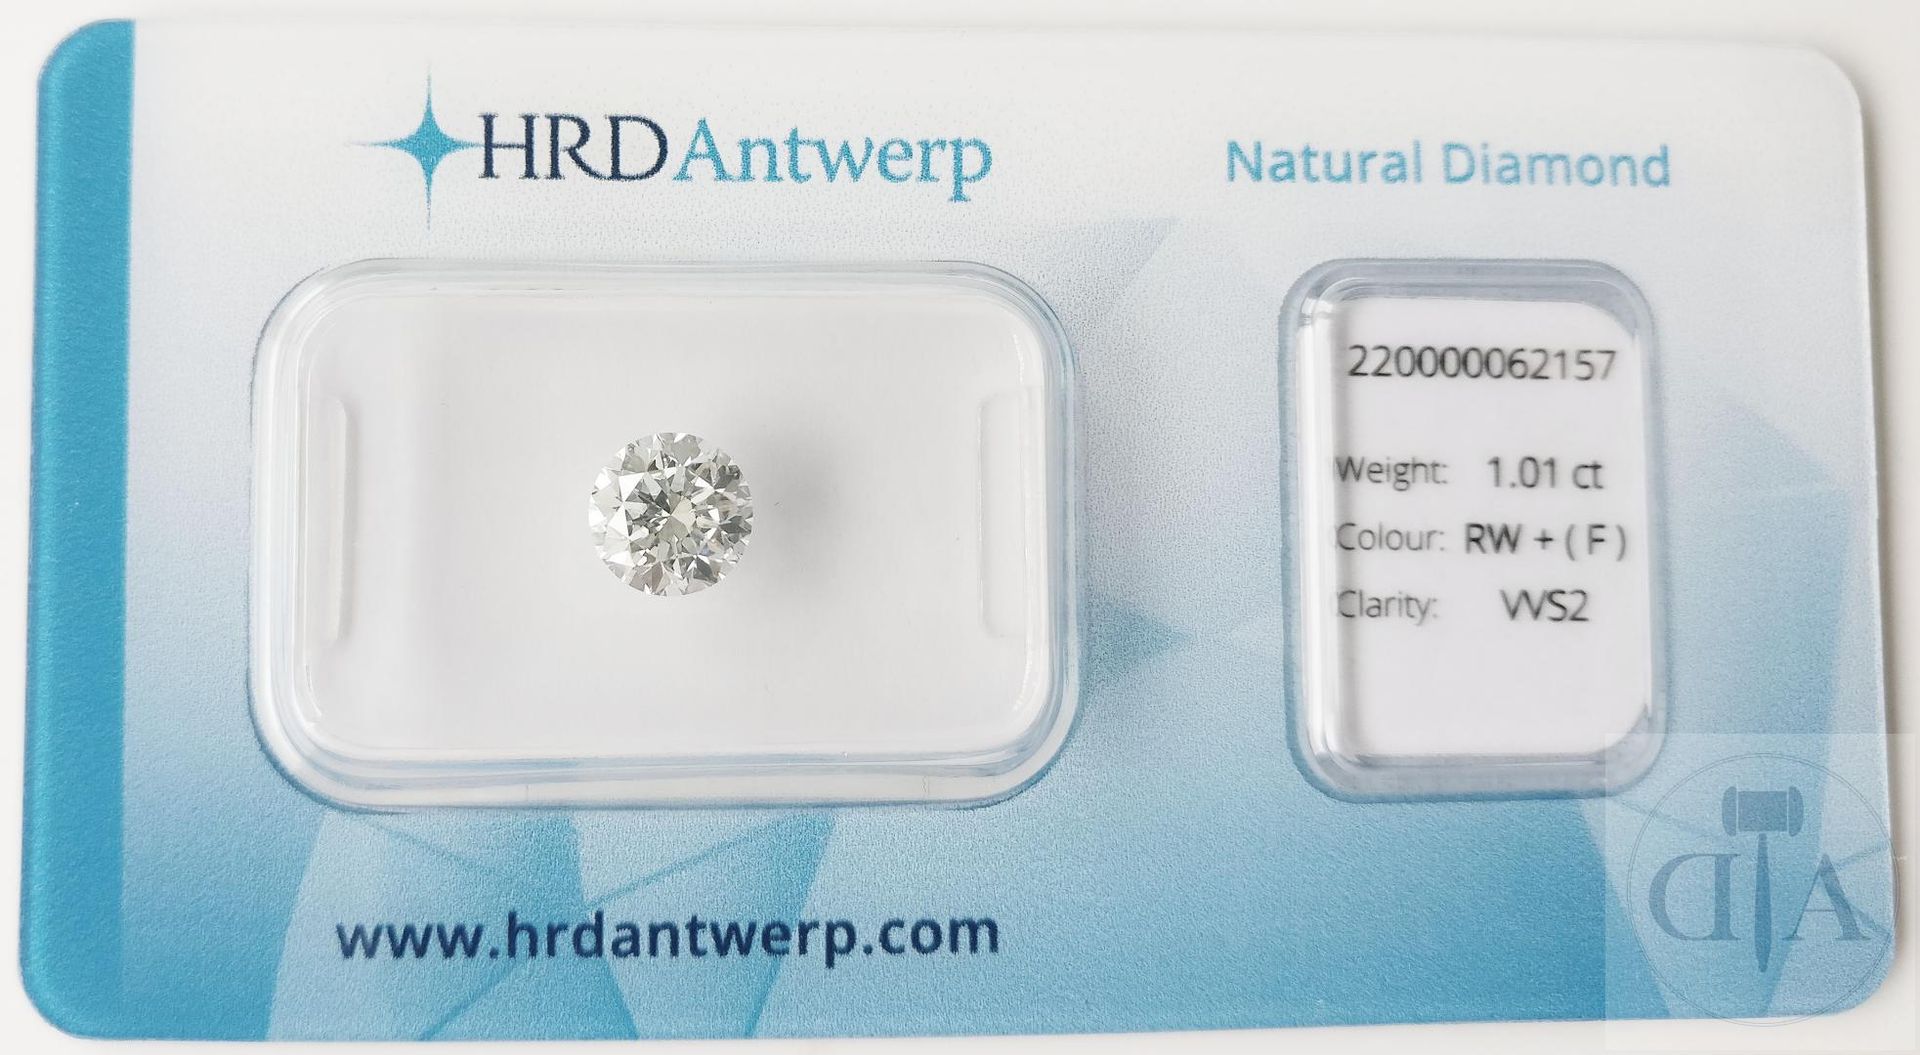 Null "Diamant de 1,01ct certifié HRD - Certificat HRD n° 220000062157 
- Forme :&hellip;